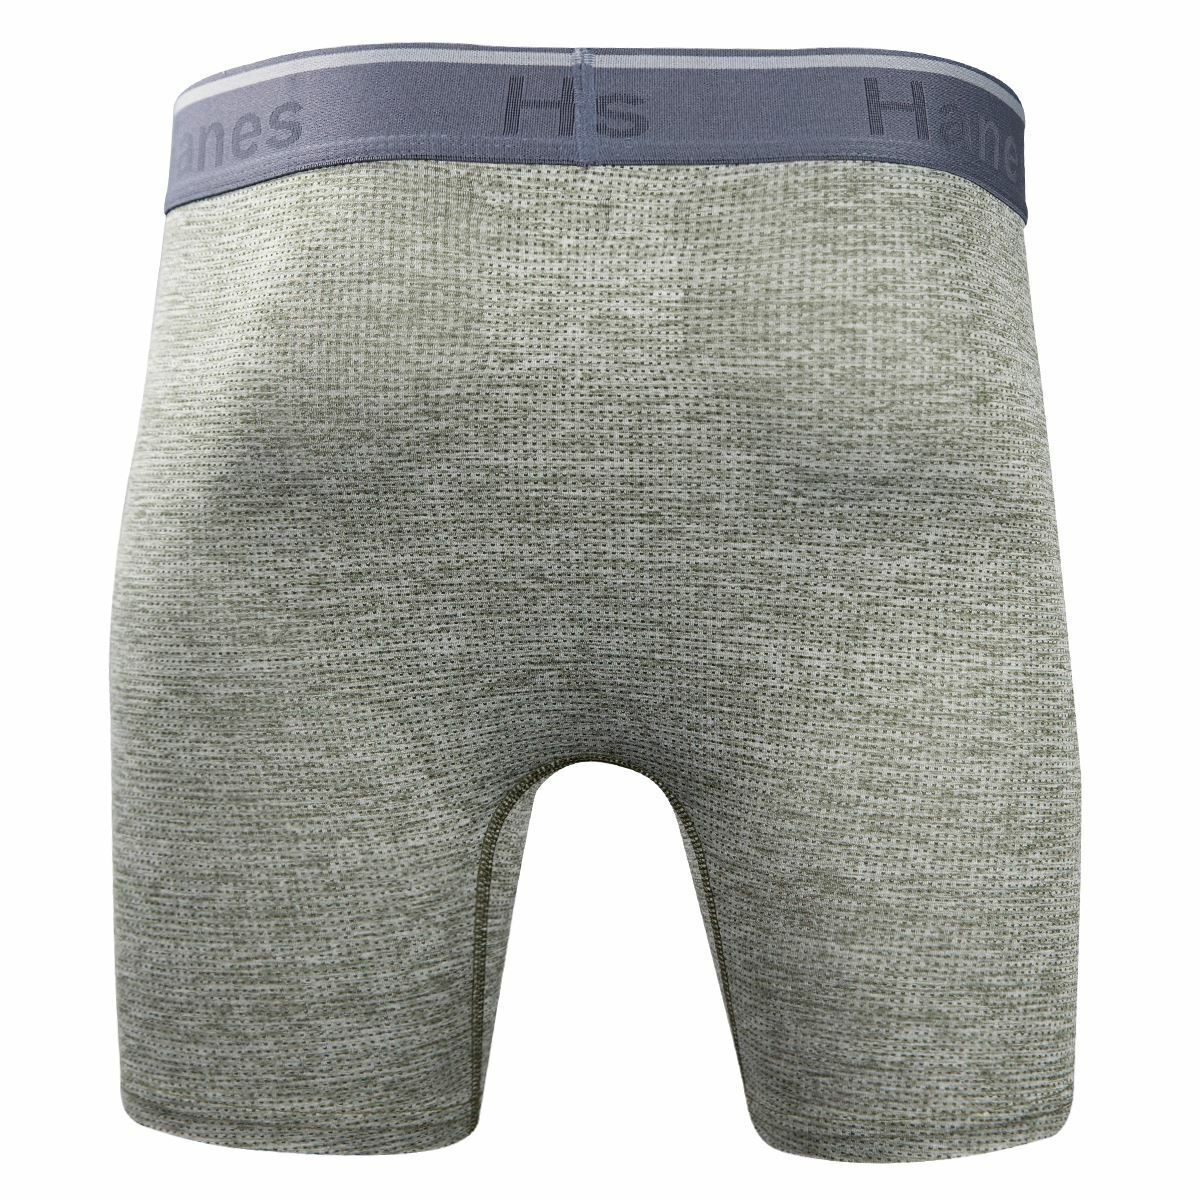 Hanes Men's Comfort Flex Fit Breathable Mesh Boxer Briefs 3-Pack :  : Clothing, Shoes & Accessories